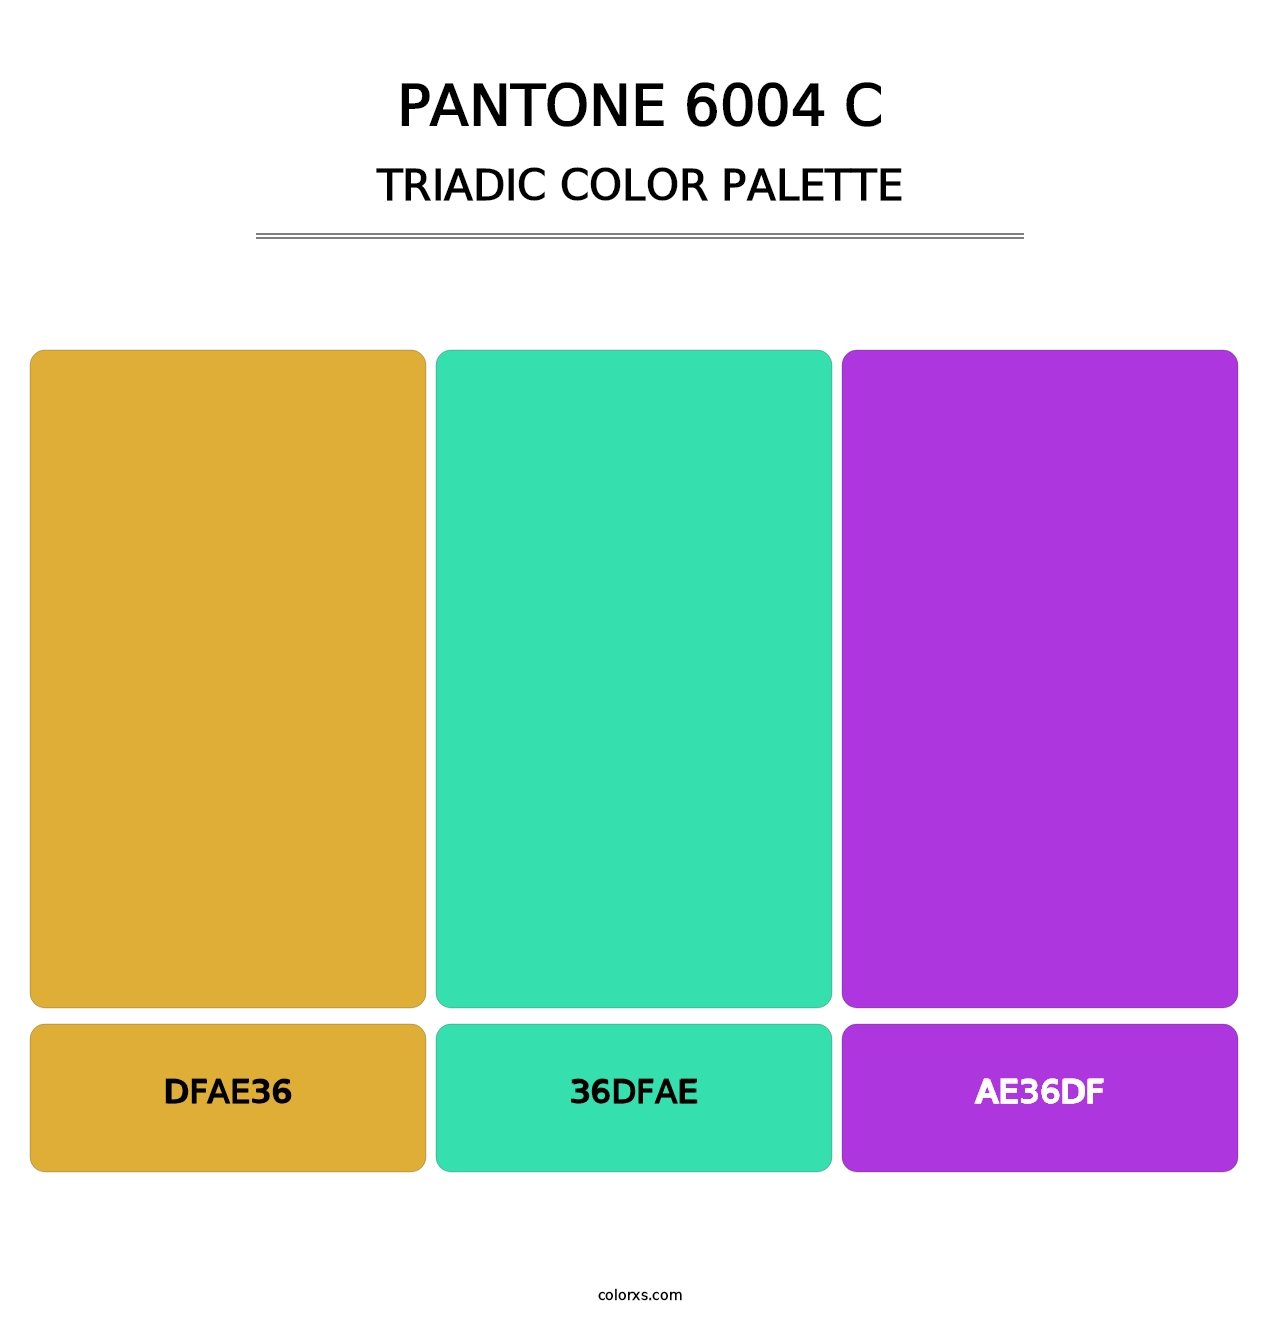 PANTONE 6004 C - Triadic Color Palette